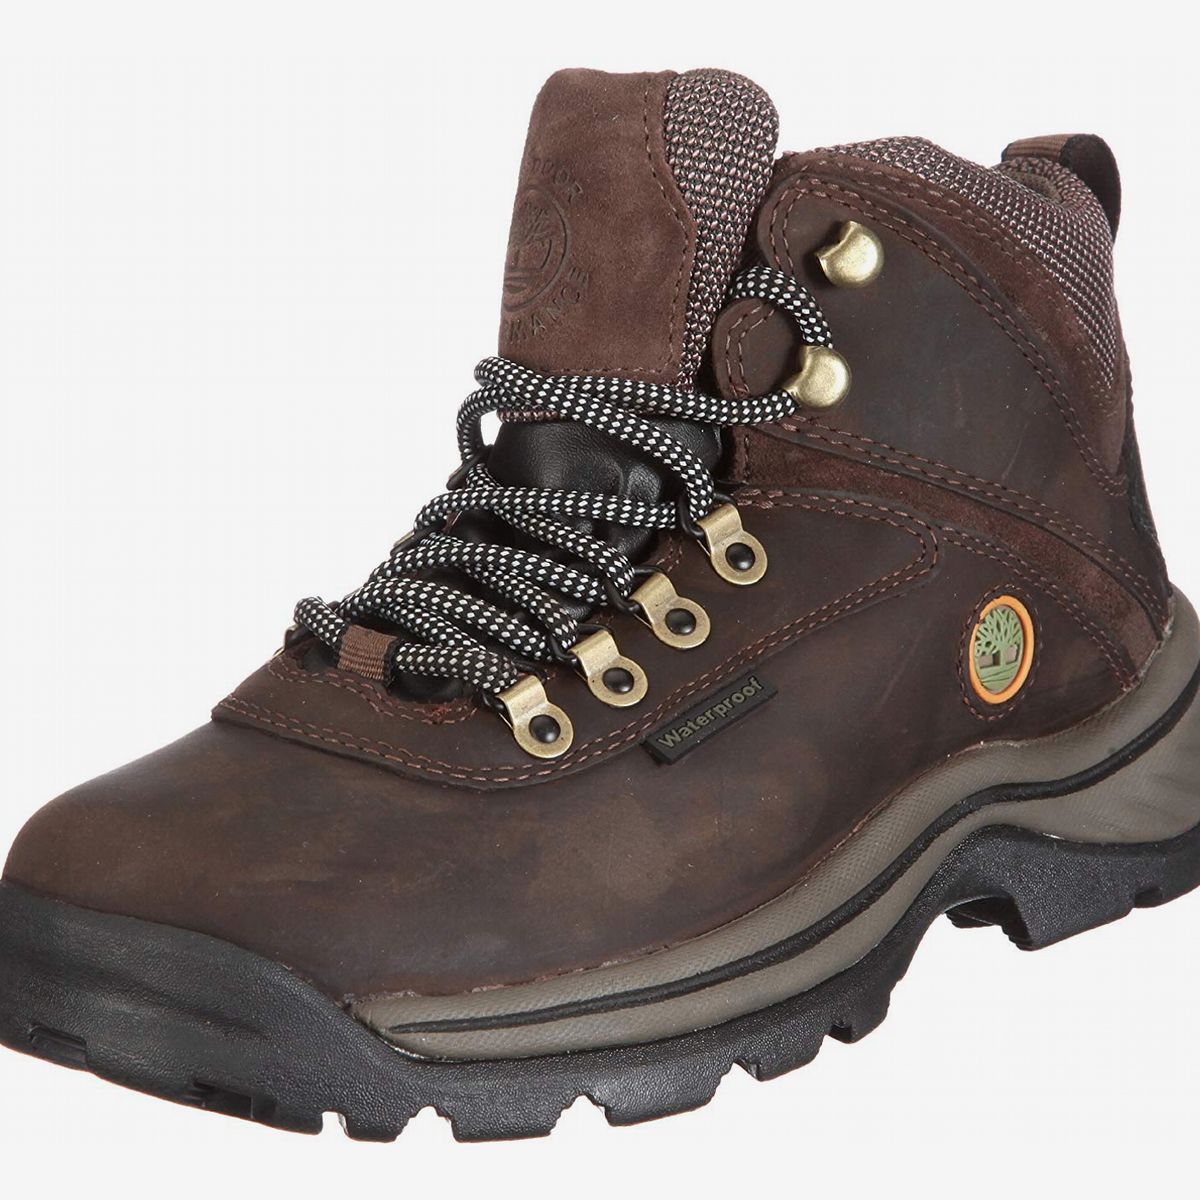 women's lightweight hiking boots